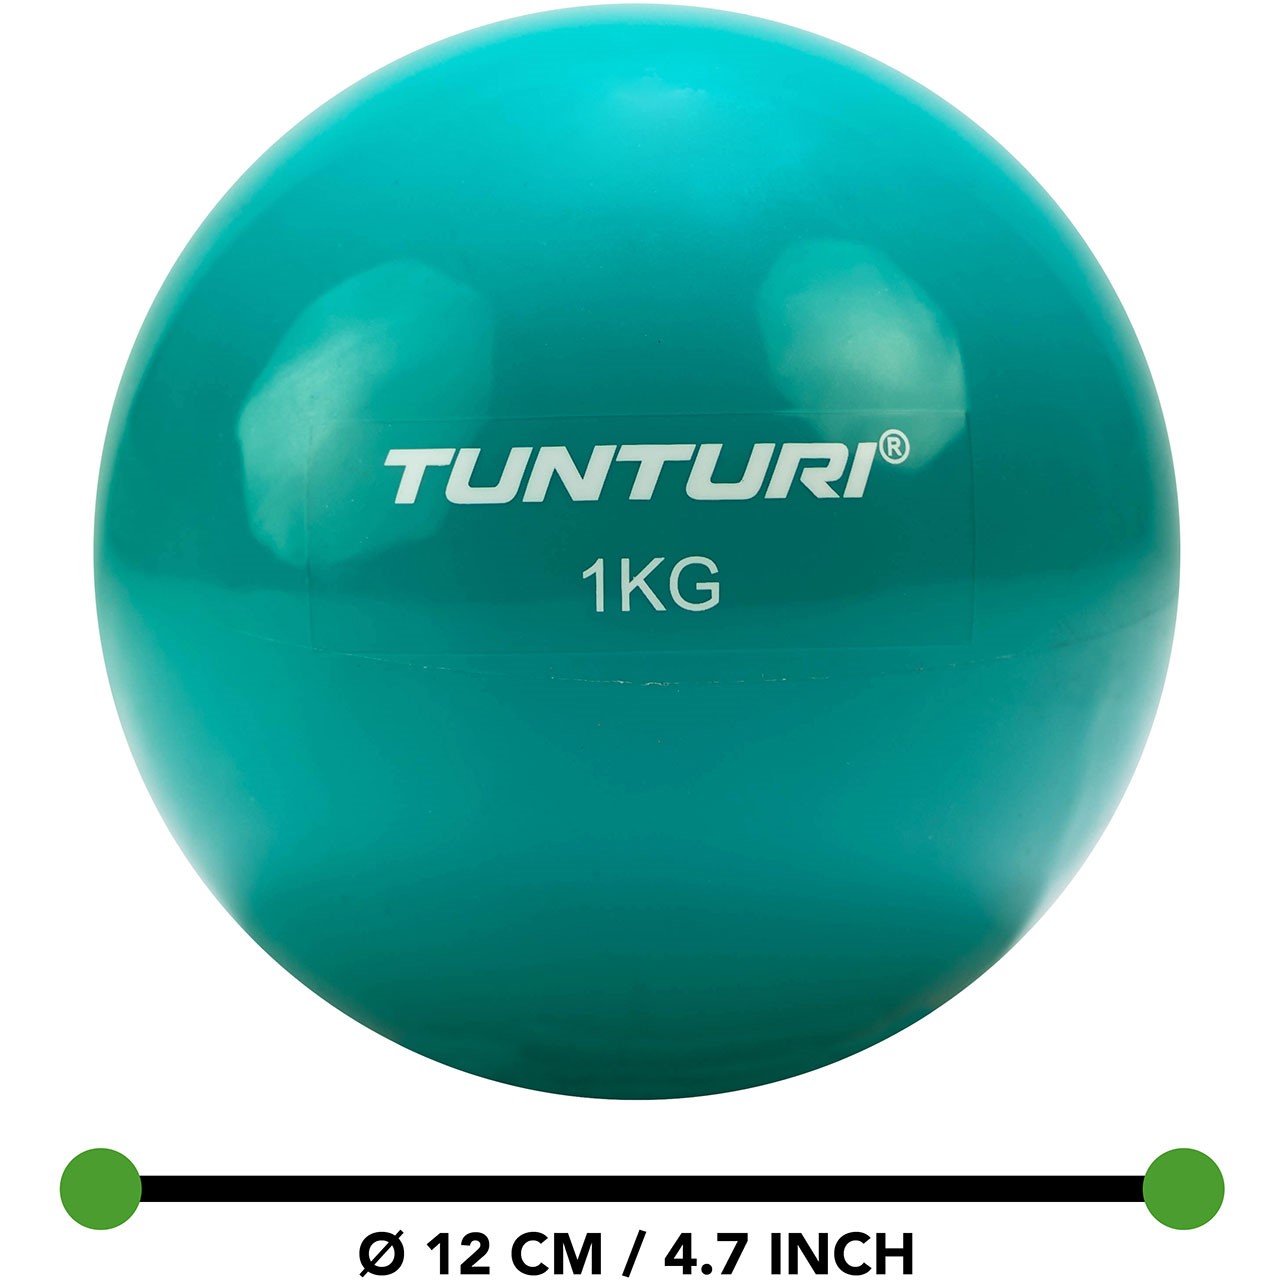 Tunturi Yoga und Pilates Toning Ball 1 kg Turquoise